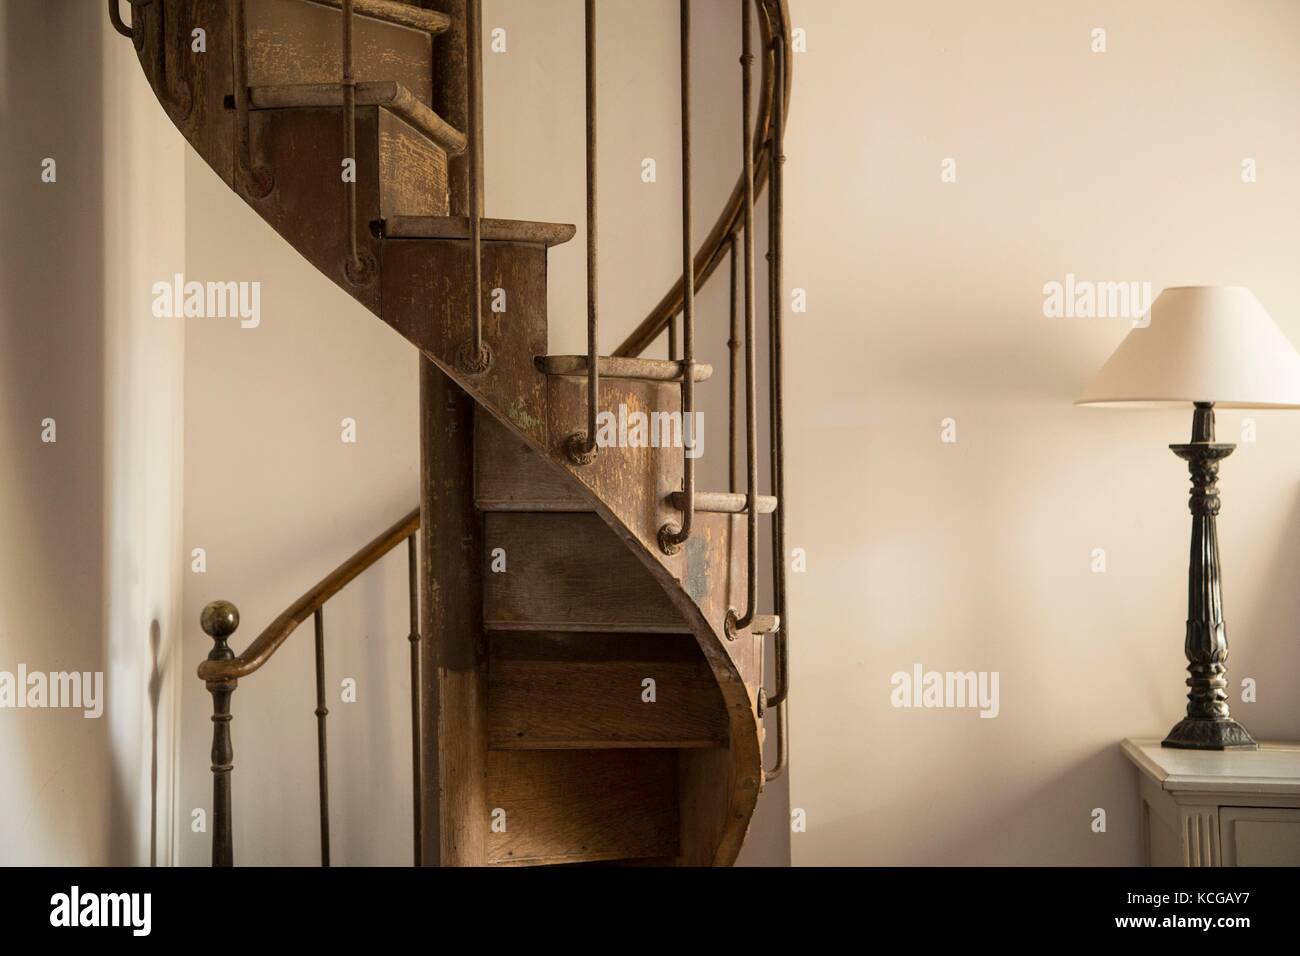 Antique wooden spiral stairway, Paris, France. Stock Photo